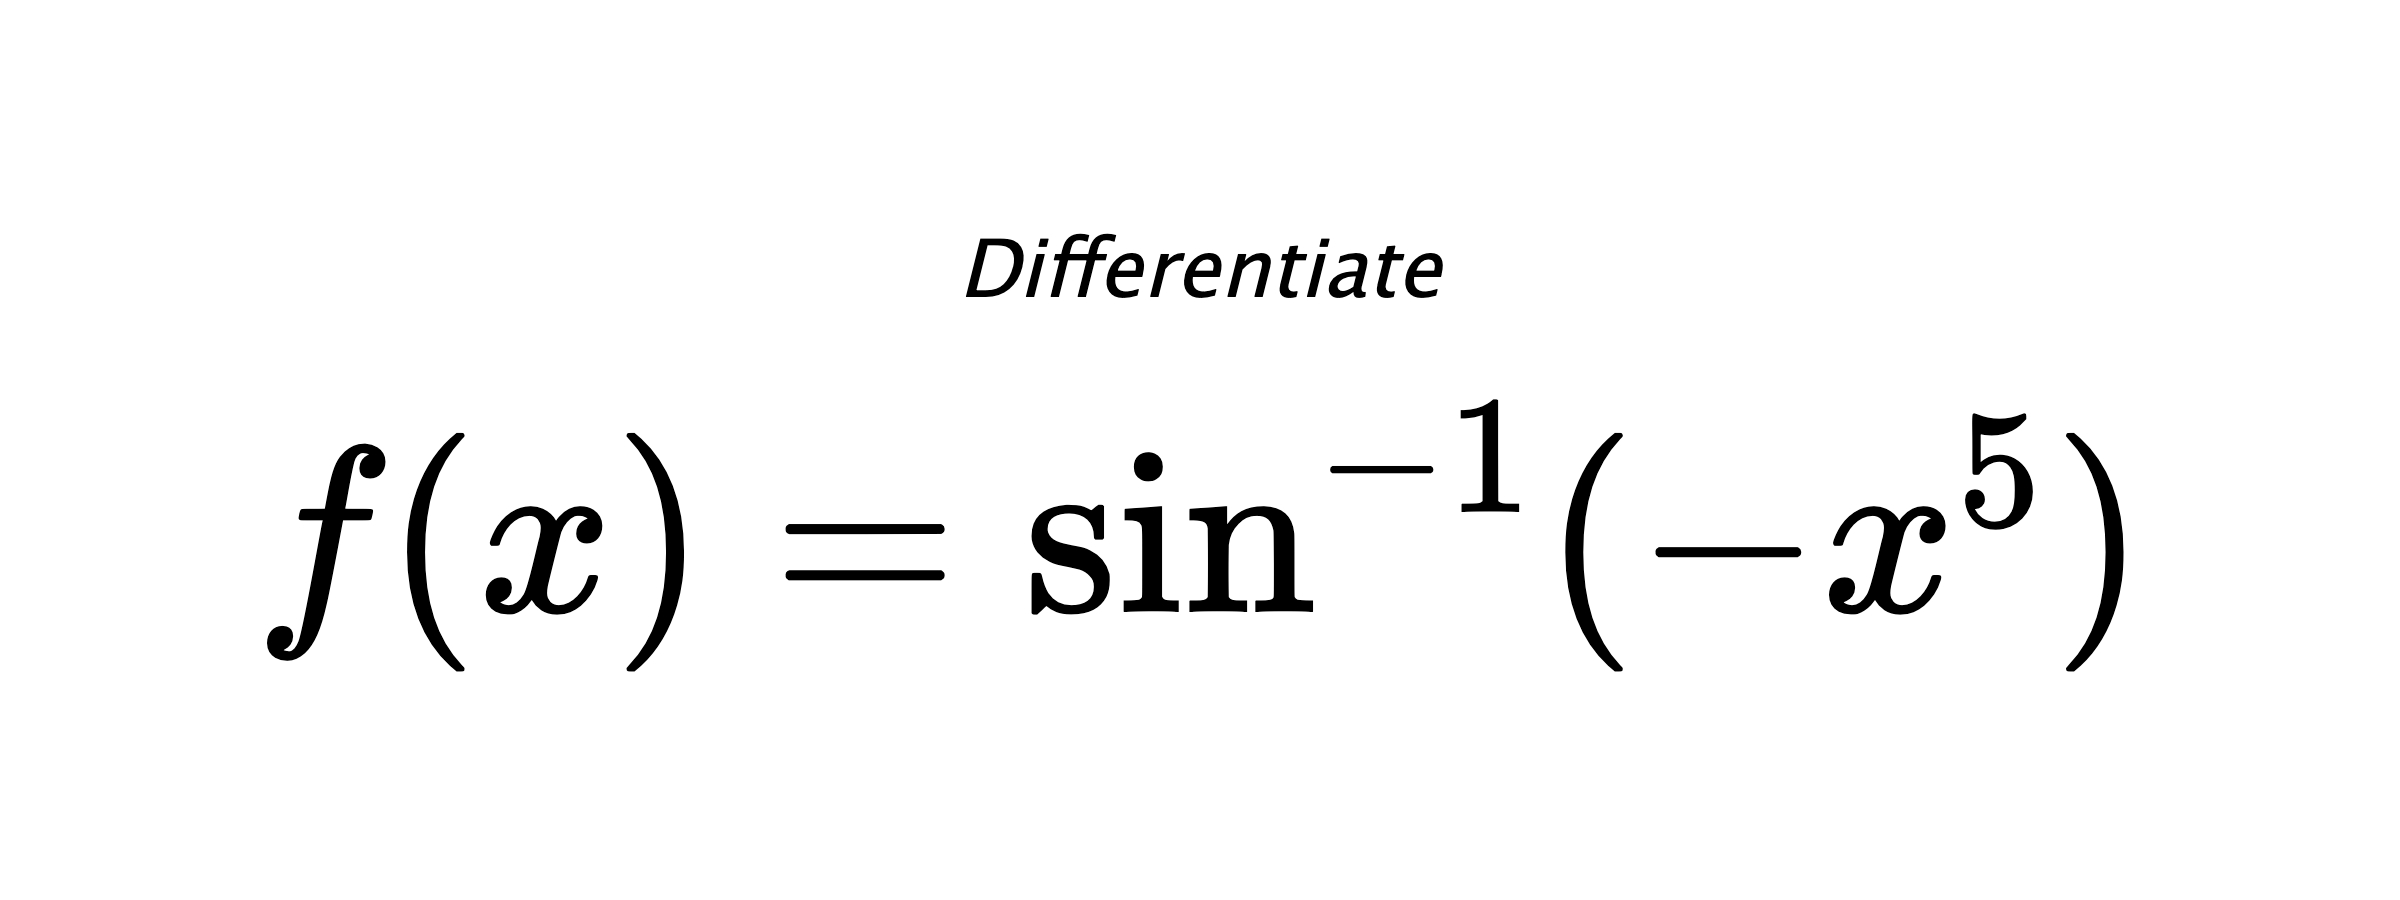 Differentiate $ f(x) = \sin^{-1} (-x^5) $